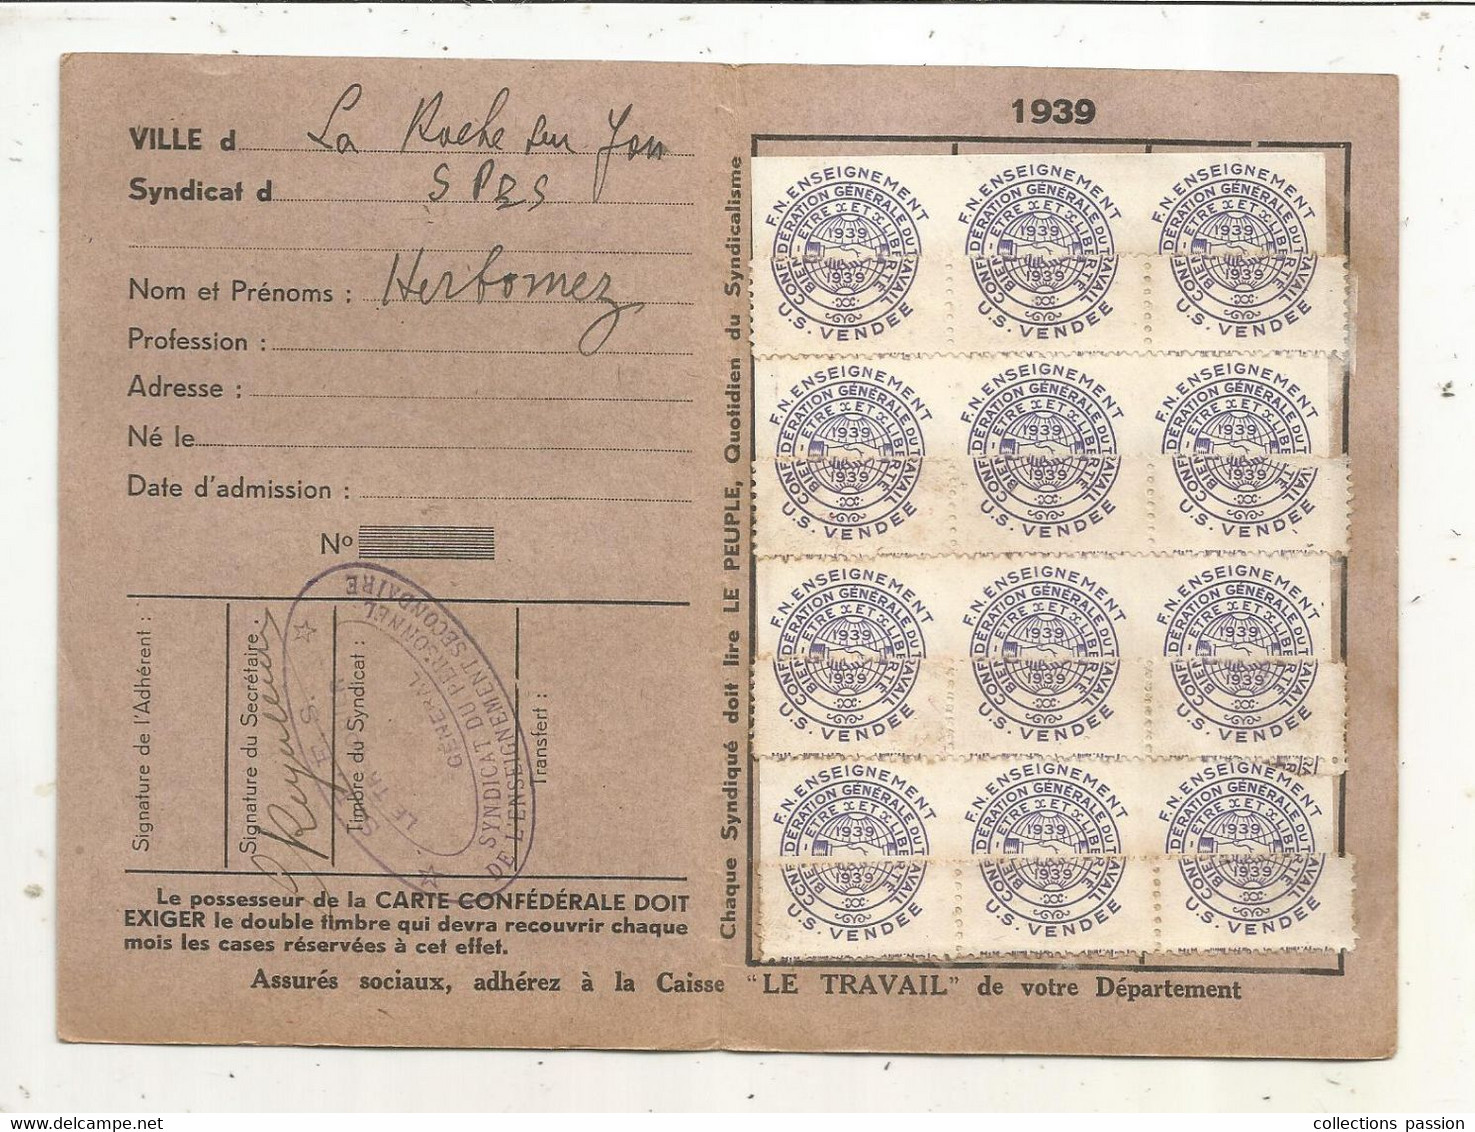 Carte Confédérale, C.G.T.,  1939 , Fédération De L'enseignement, Timbrée U.S. VENDEE - Membership Cards